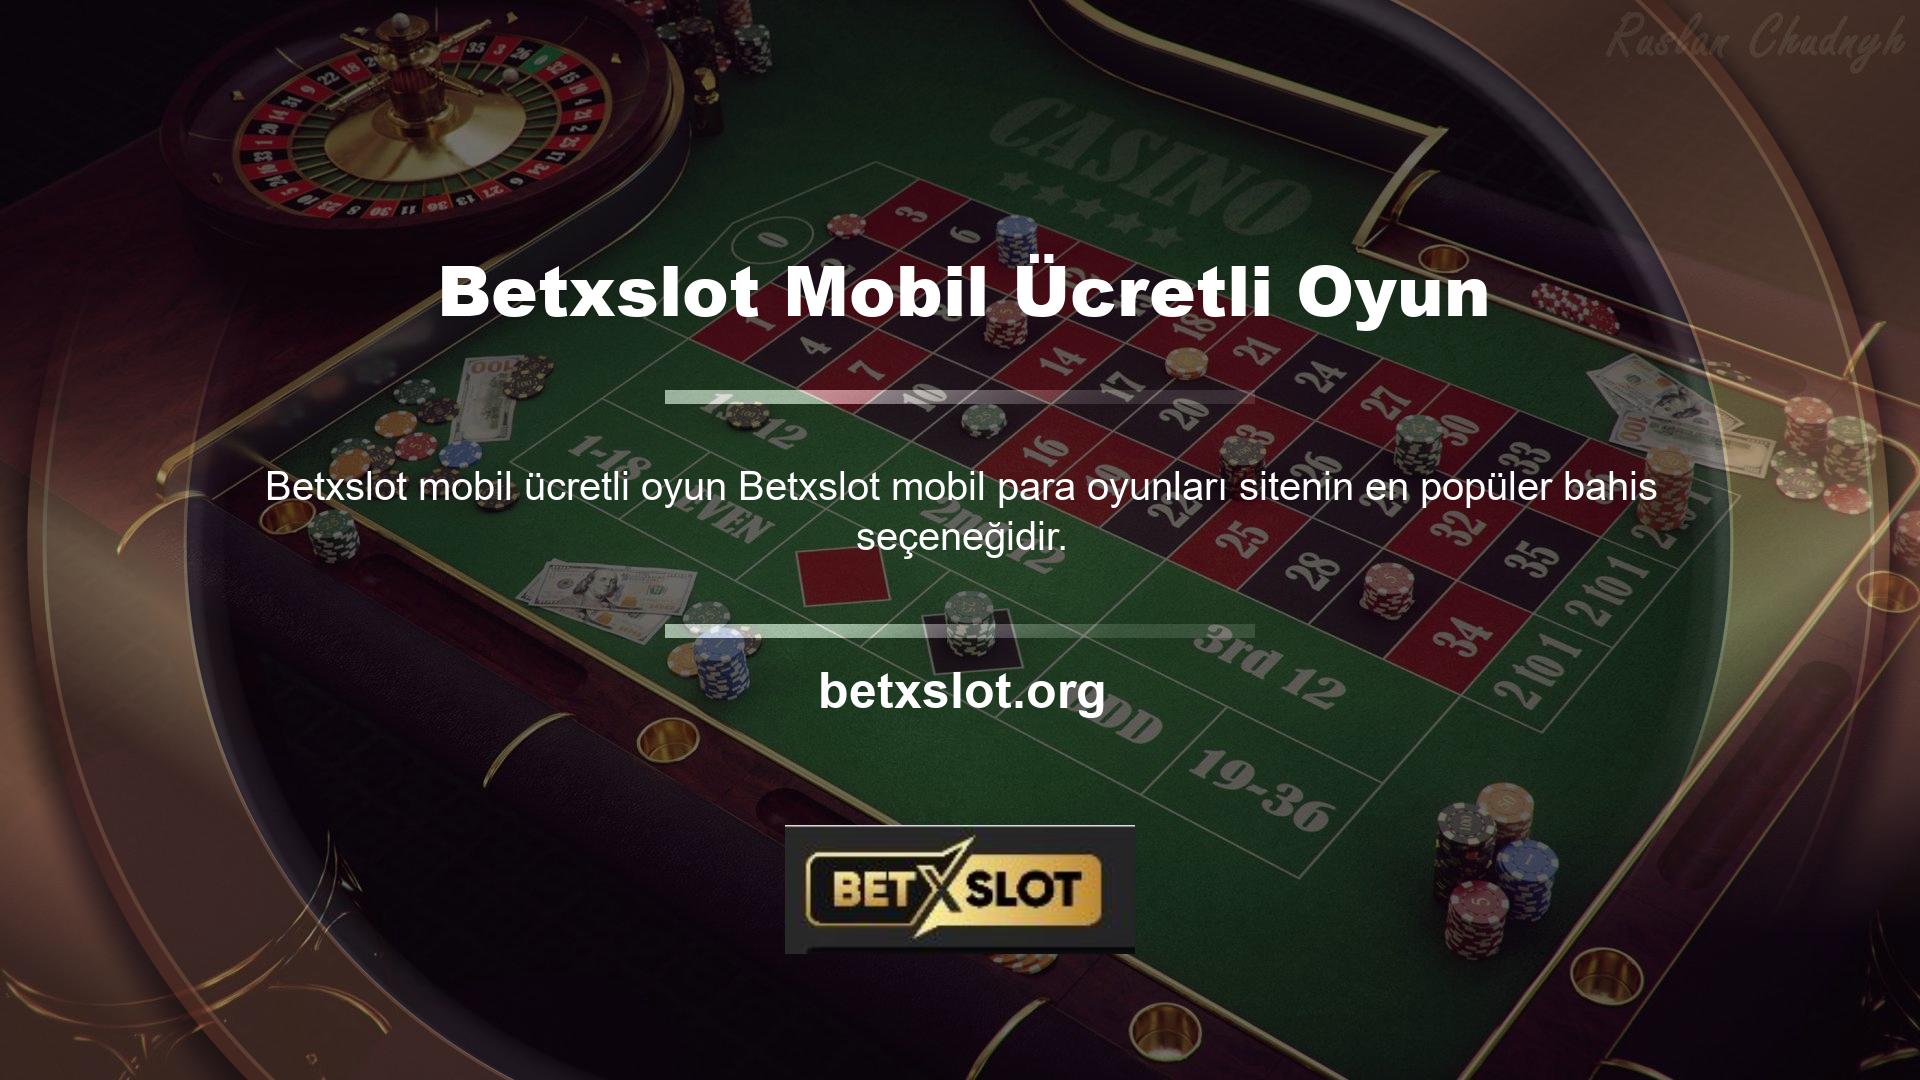 Mobil uygulama üzerinden hesabınıza para yatırarak başta rulet ve poker olmak üzere canlı casino oyunları oynamayı tercih edebilirsiniz